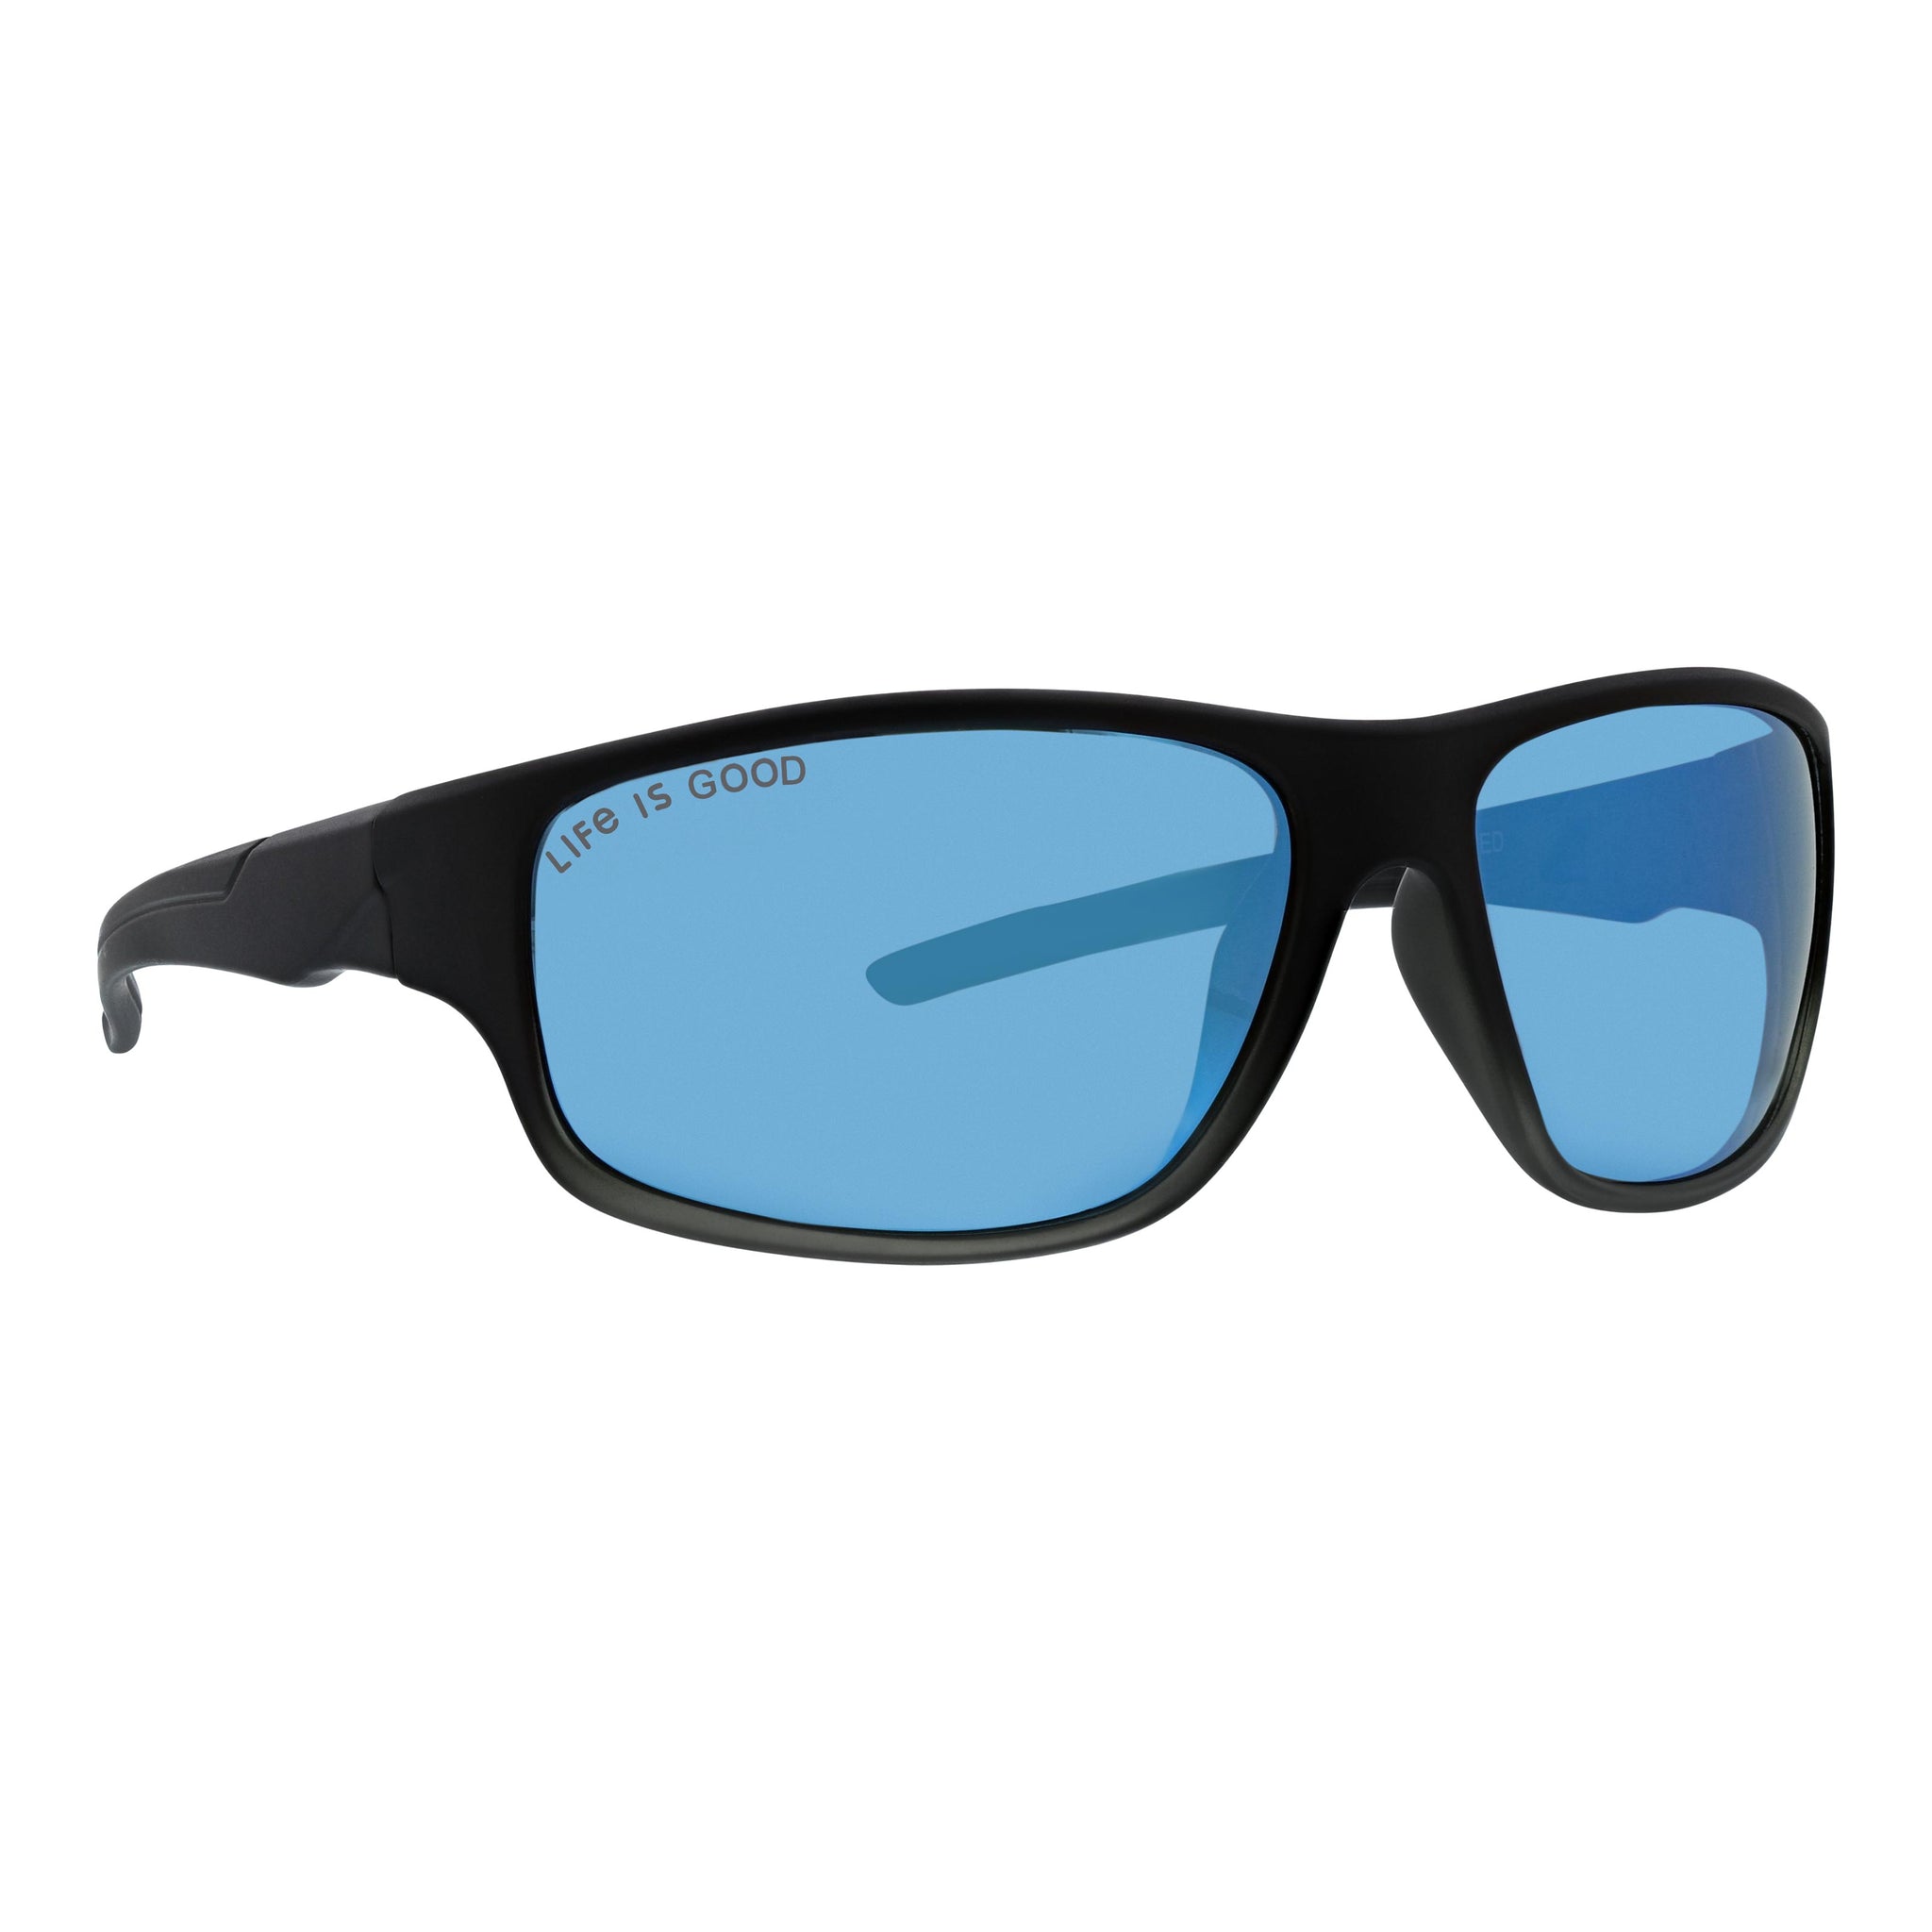 Sunglasses TRITON - MATTE BLACK